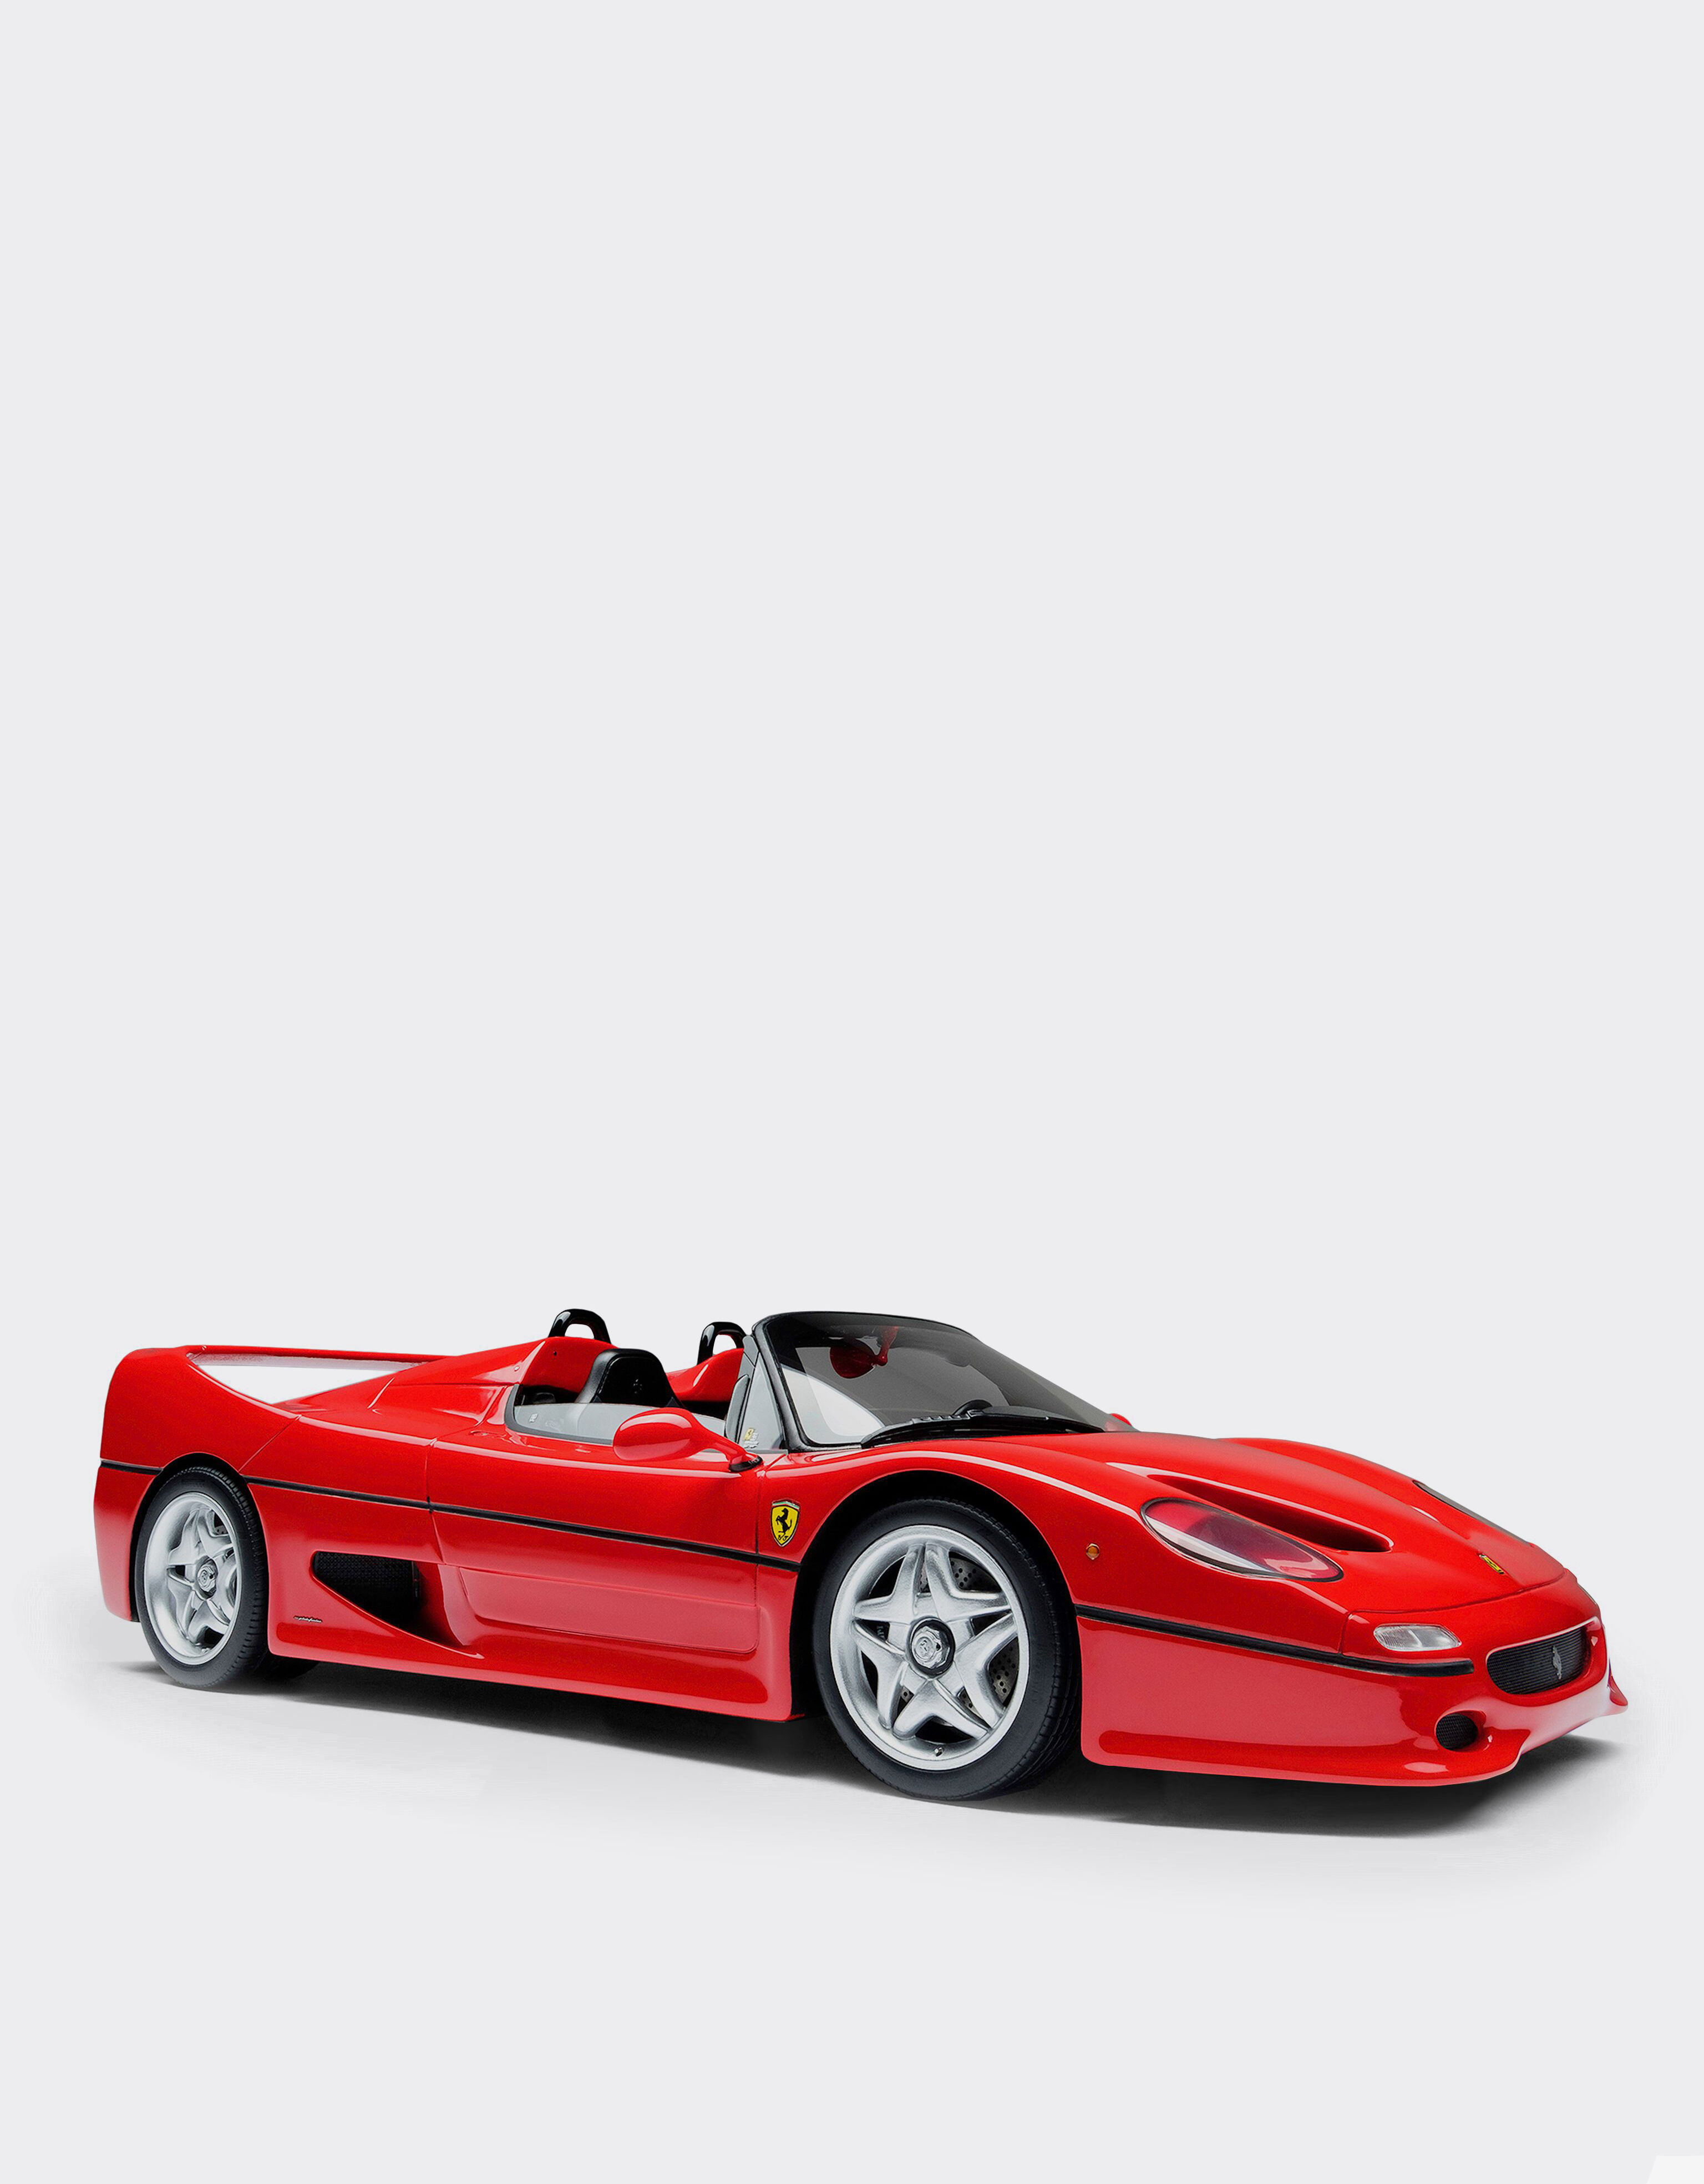 Ferrari Modellauto Ferrari F50 im Maßstab 1:18 Rot L7814f